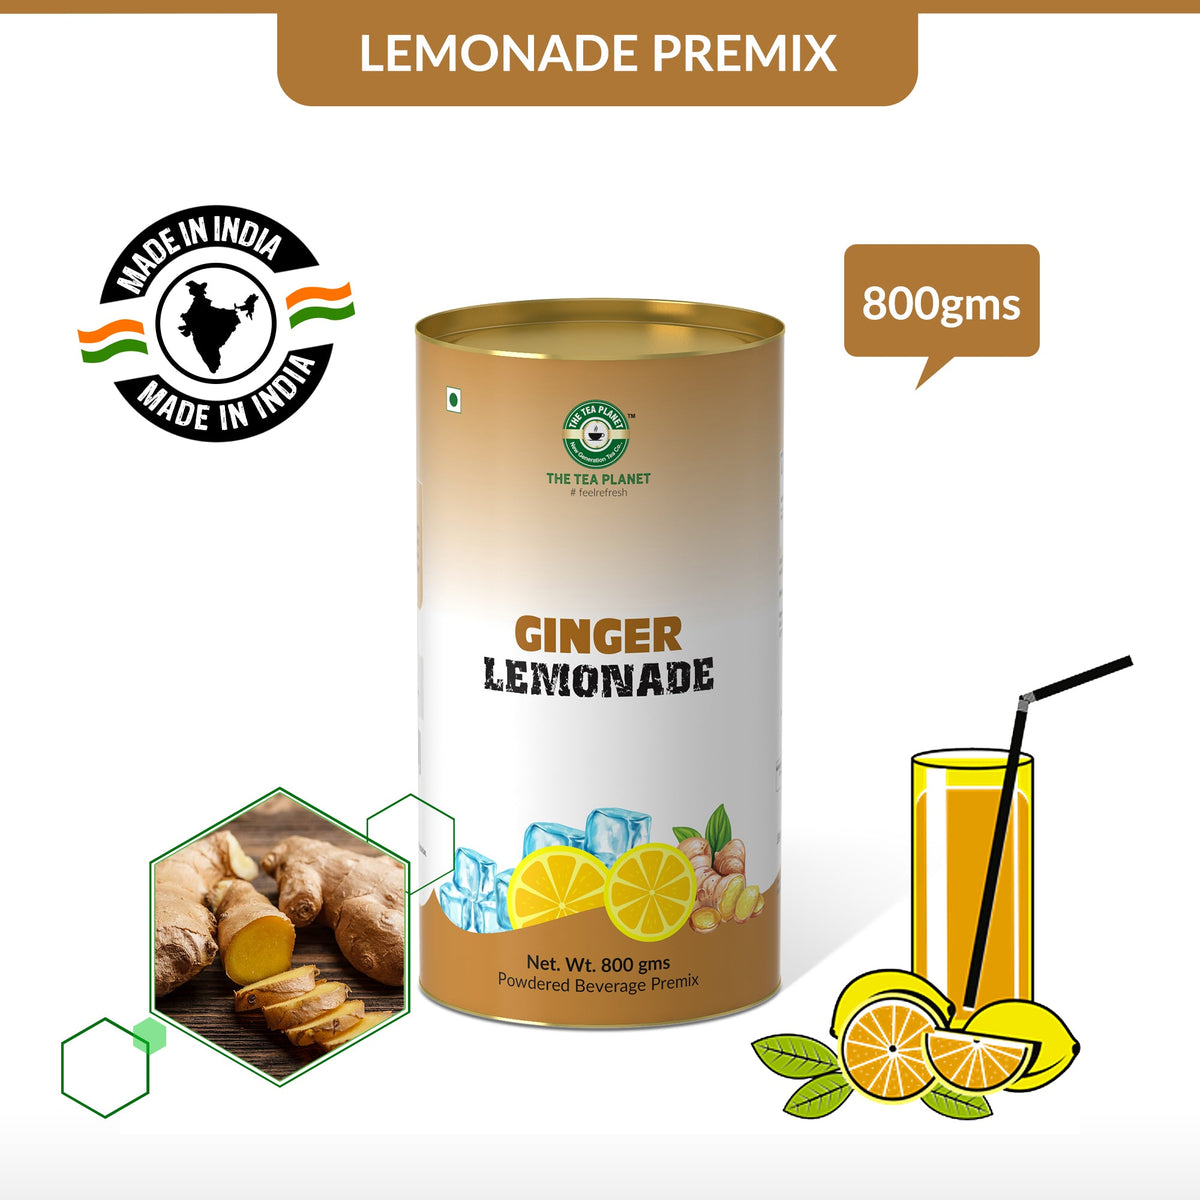 Ginger Lemonade Premix